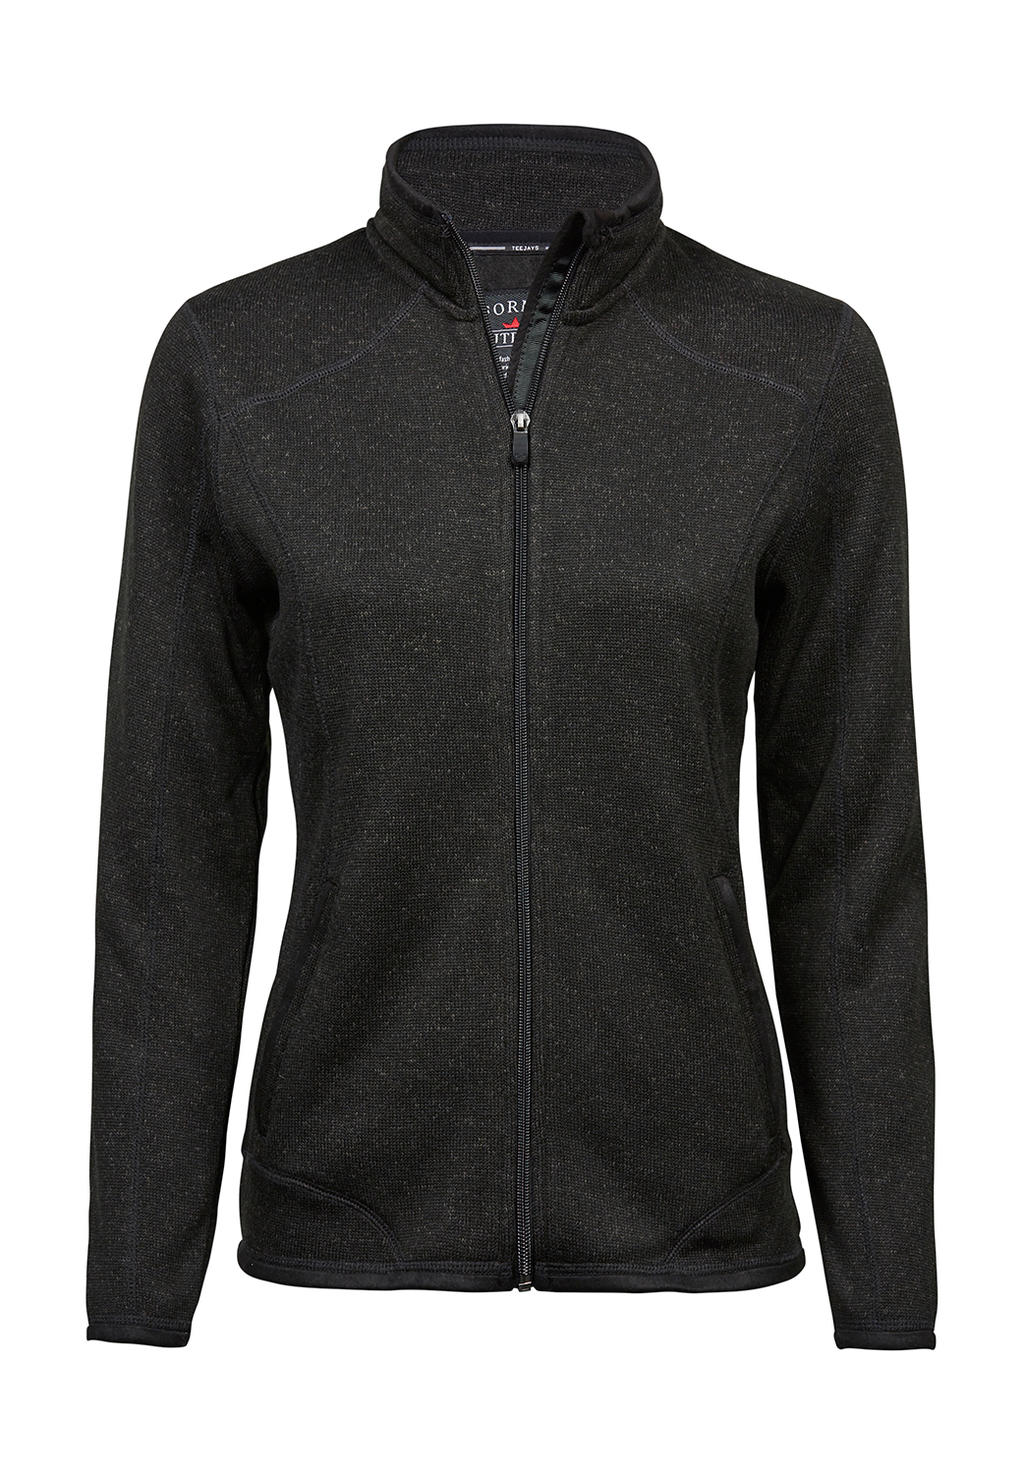  Ladies Outdoor Fleece Jacket in Farbe Black